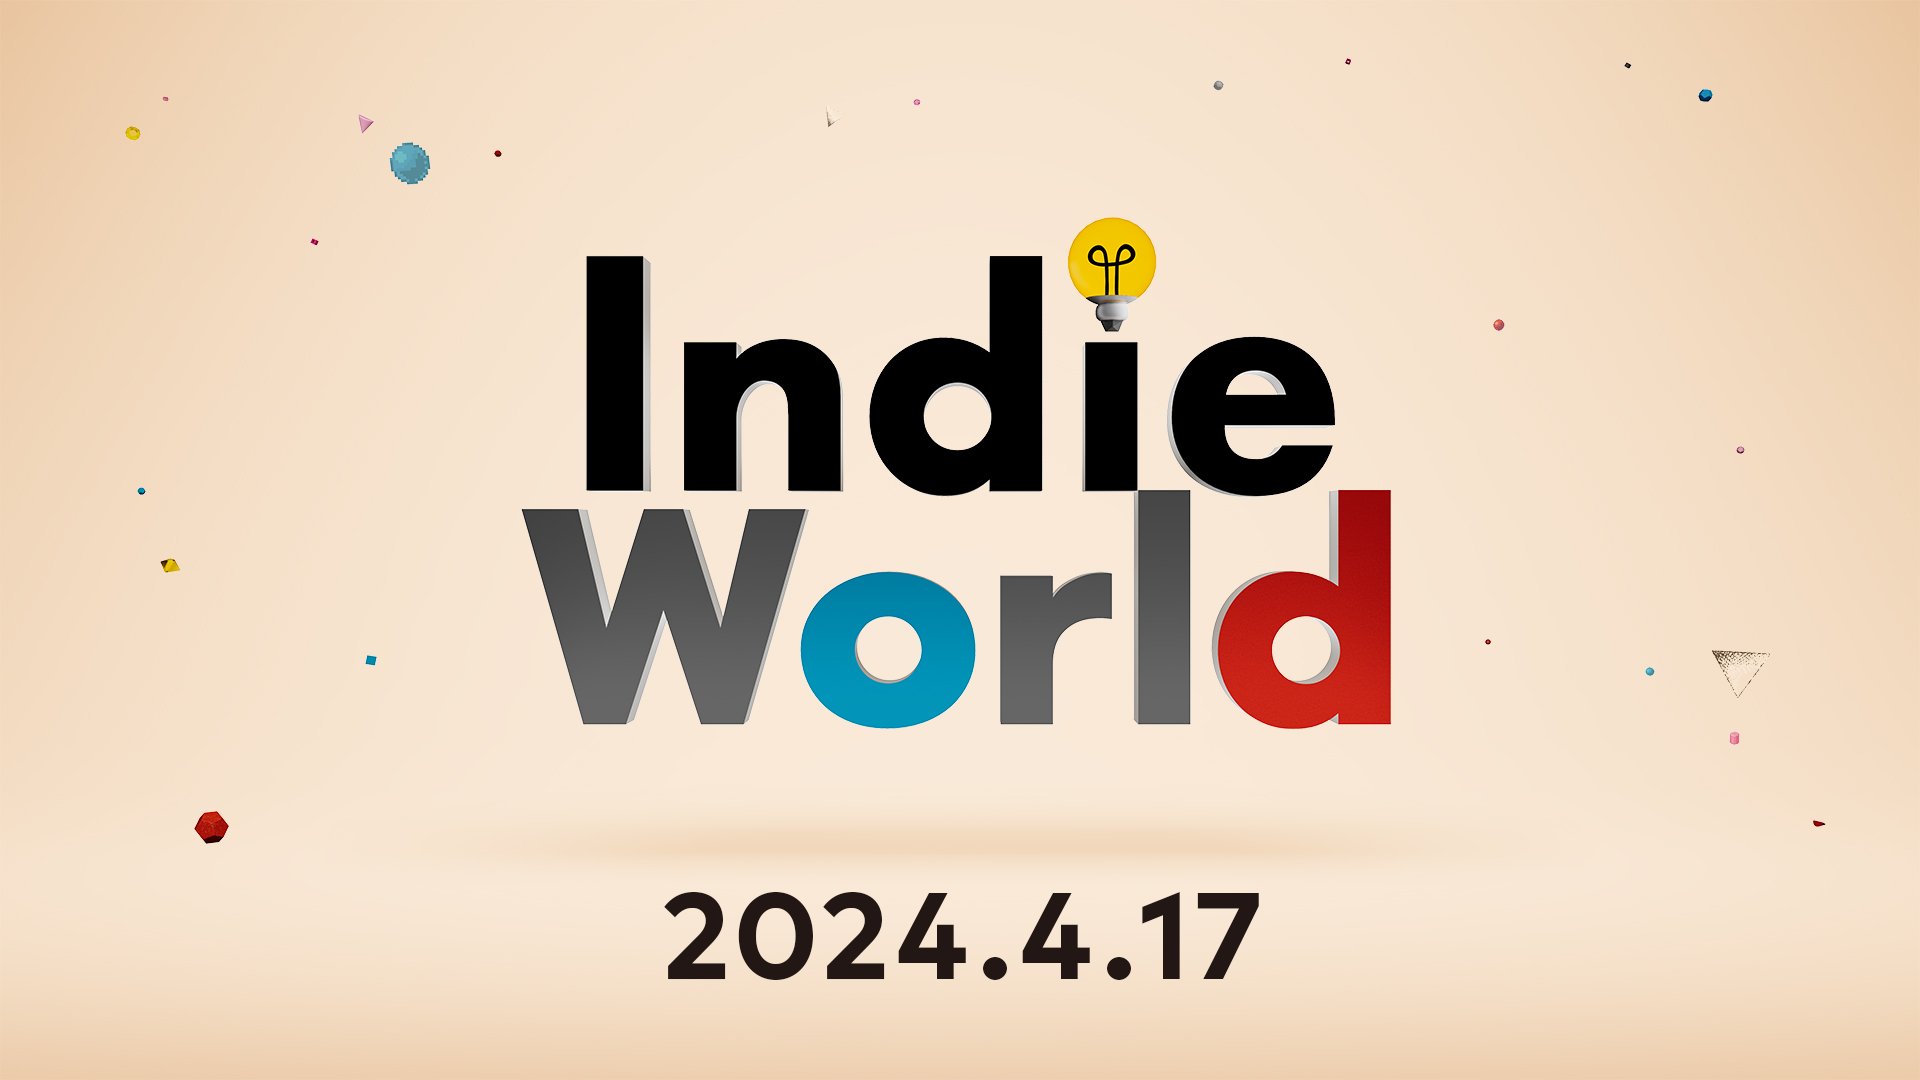 Indie World 2024.4.17